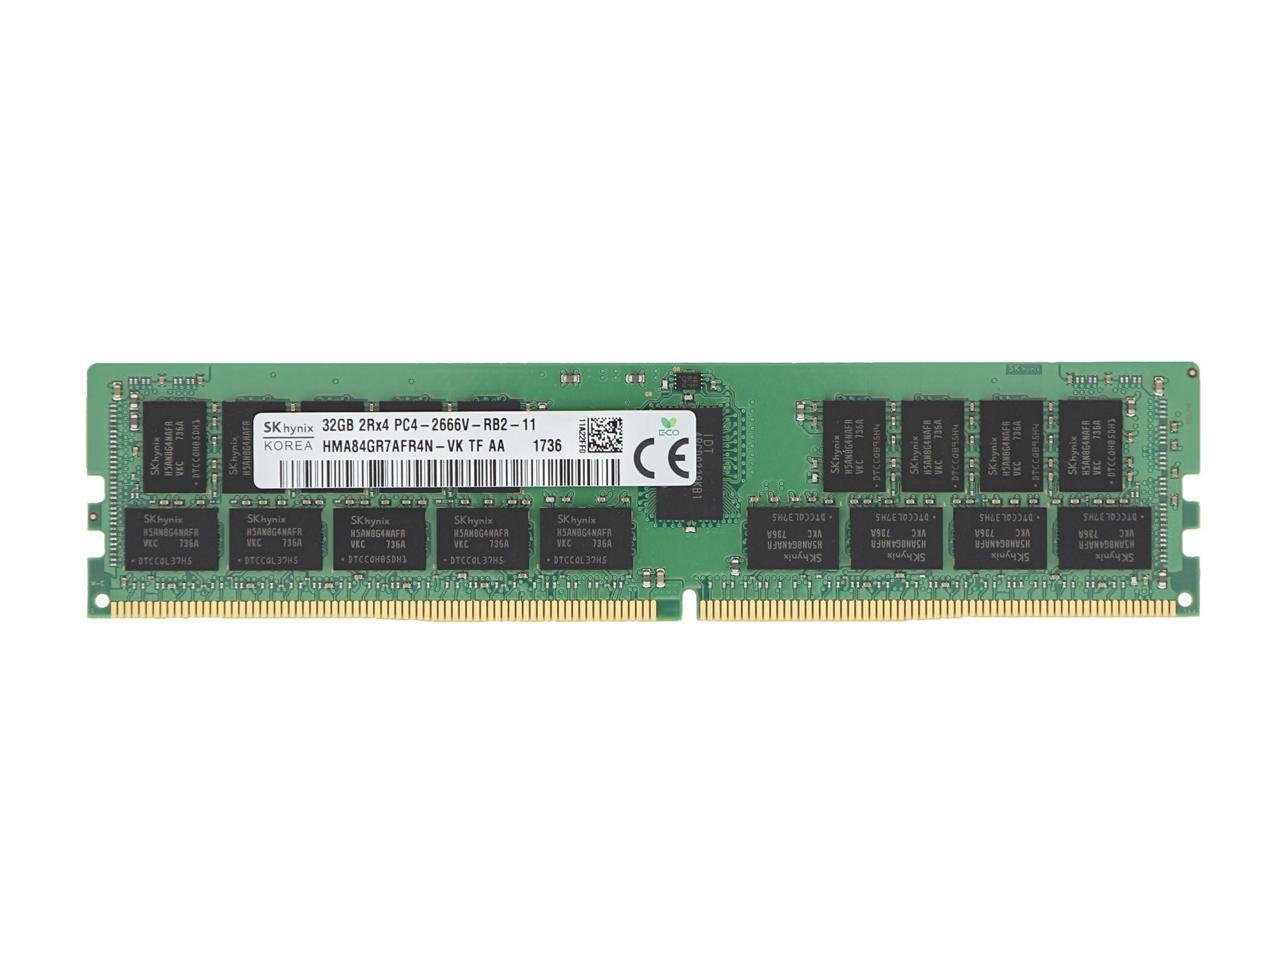 For Dell SNPTN78YC/32G A9781929 32 GB 288-Pin DDR4 ECC RDIMM Server RAM for  PowerEdge R740xd2 By SK hynix inc. Memory RAM HMA84GR7AFR4N-VK